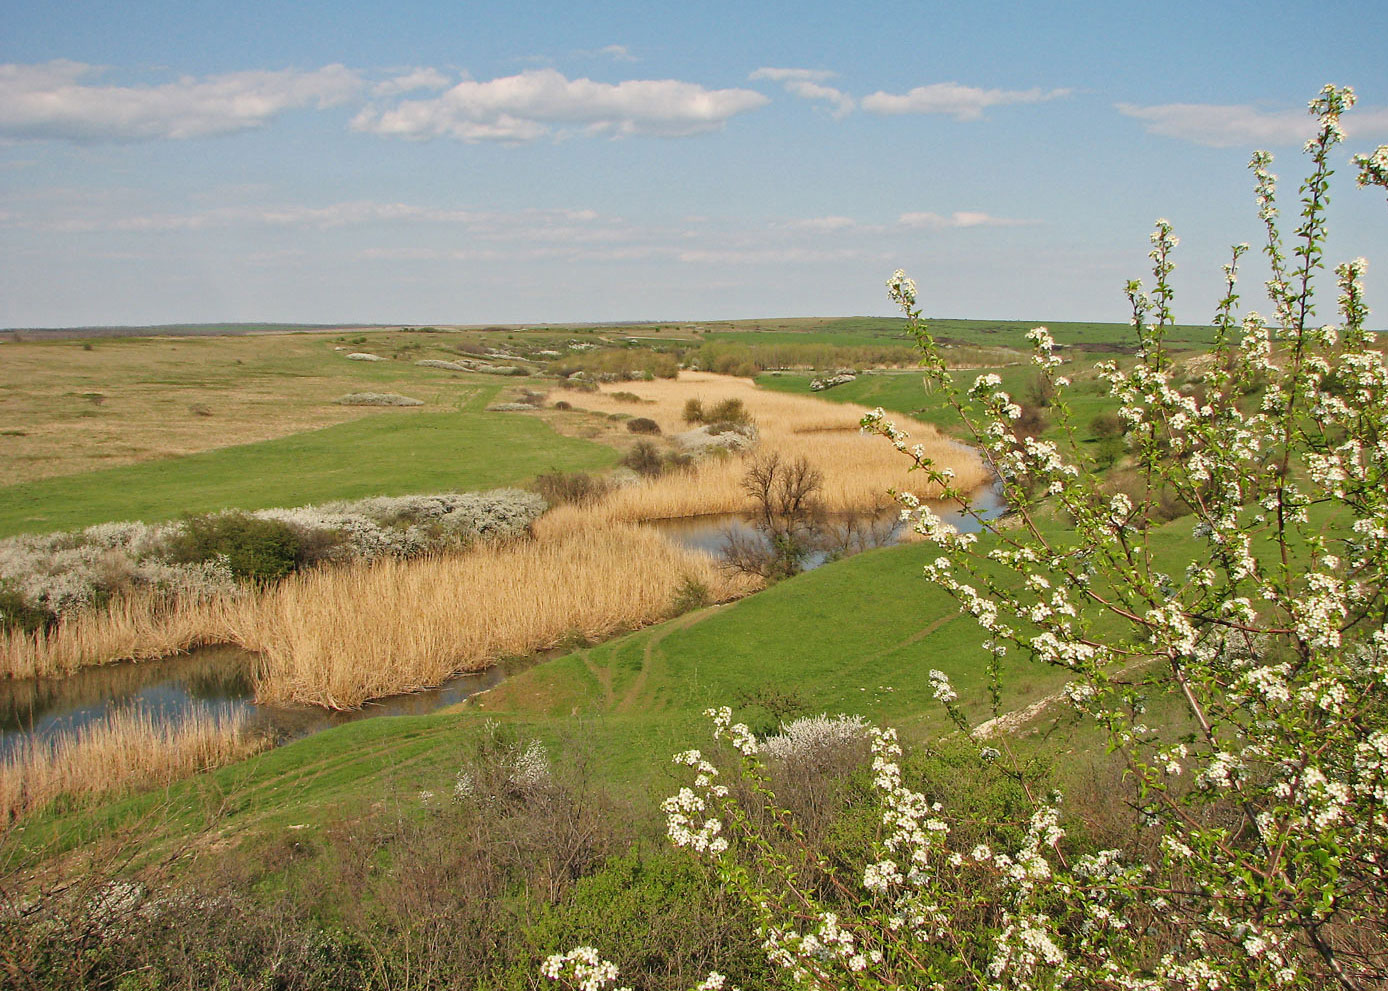 Хомутовская степь, image of landscape/habitat.